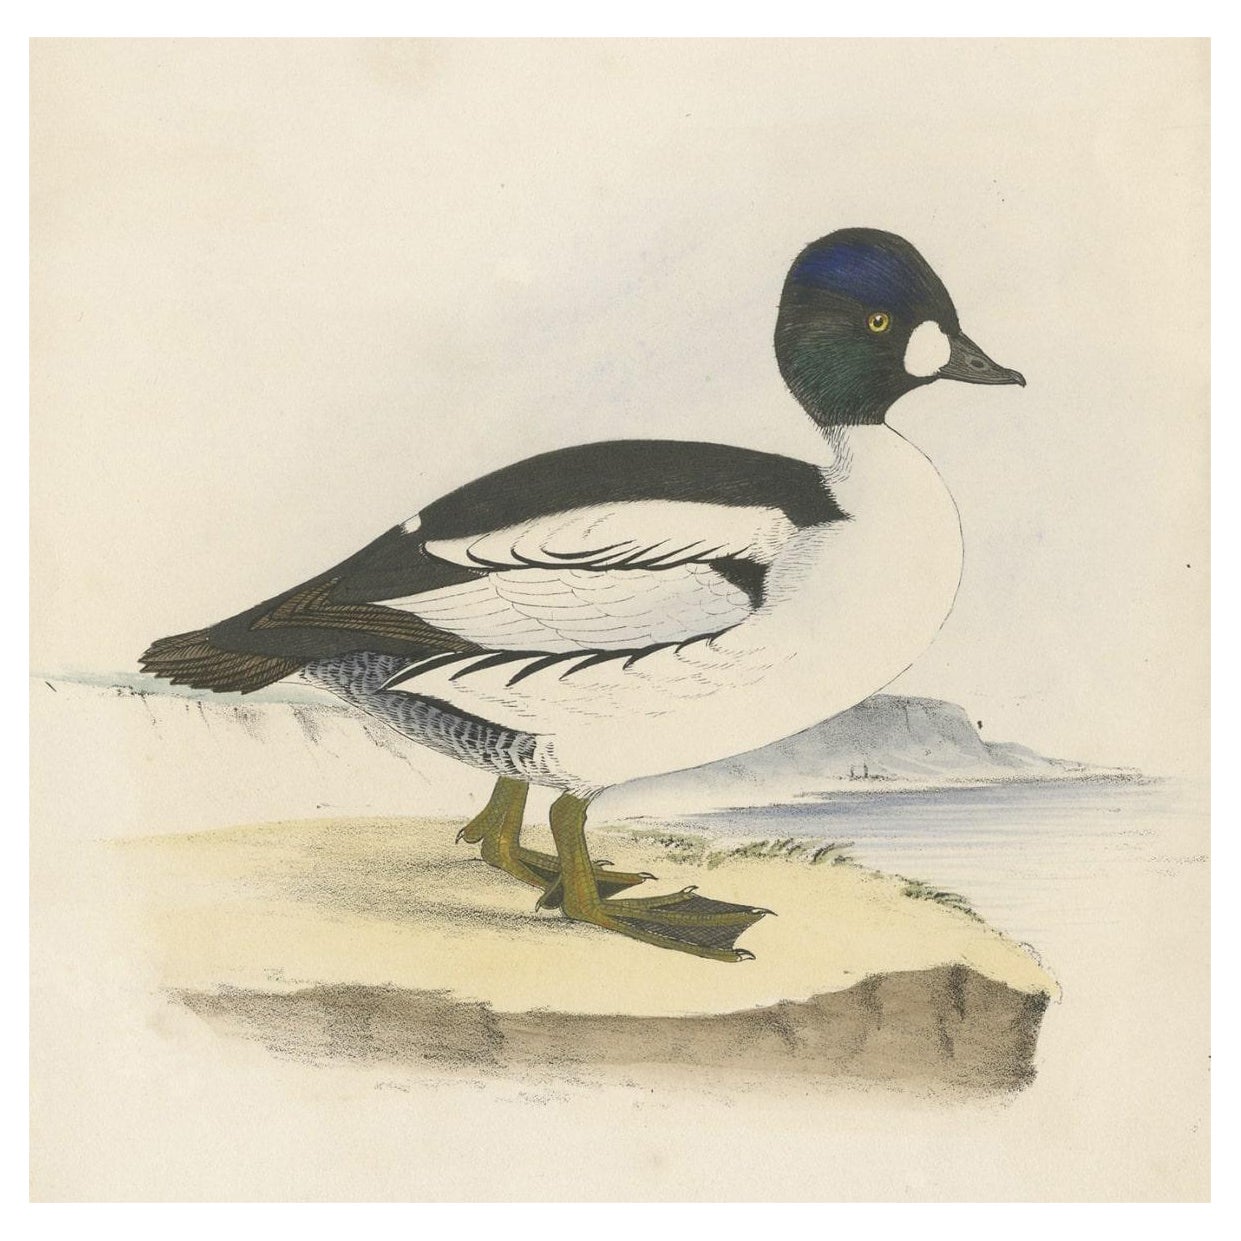 Antique Bird Print of a Duck, C.1840